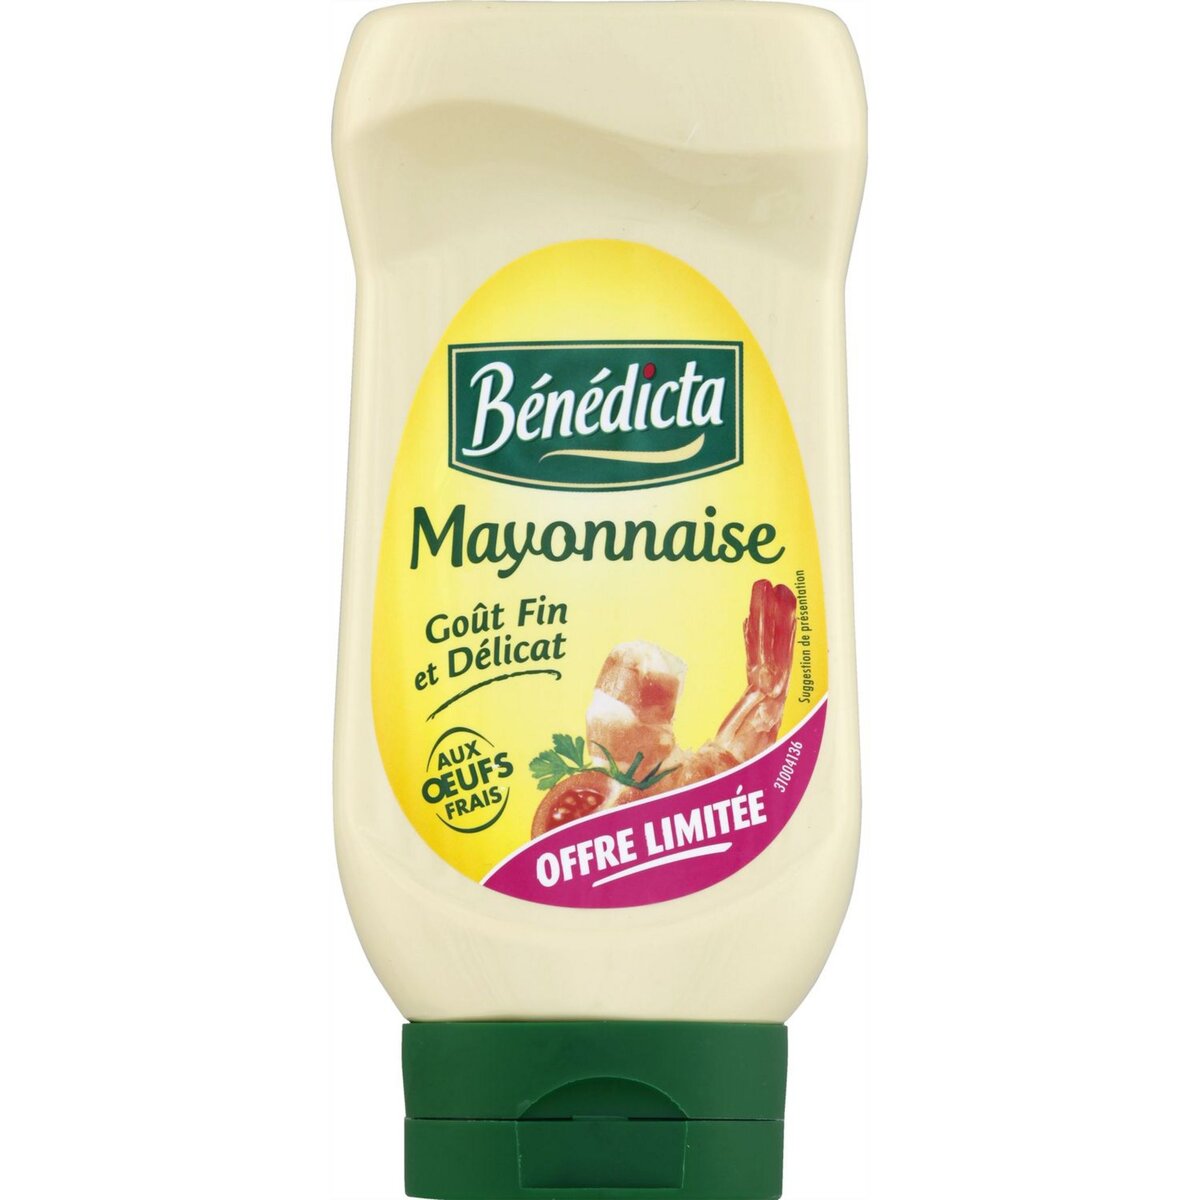 BENEDICTA Bénédicta mayonnaise nature 400g offre découverte